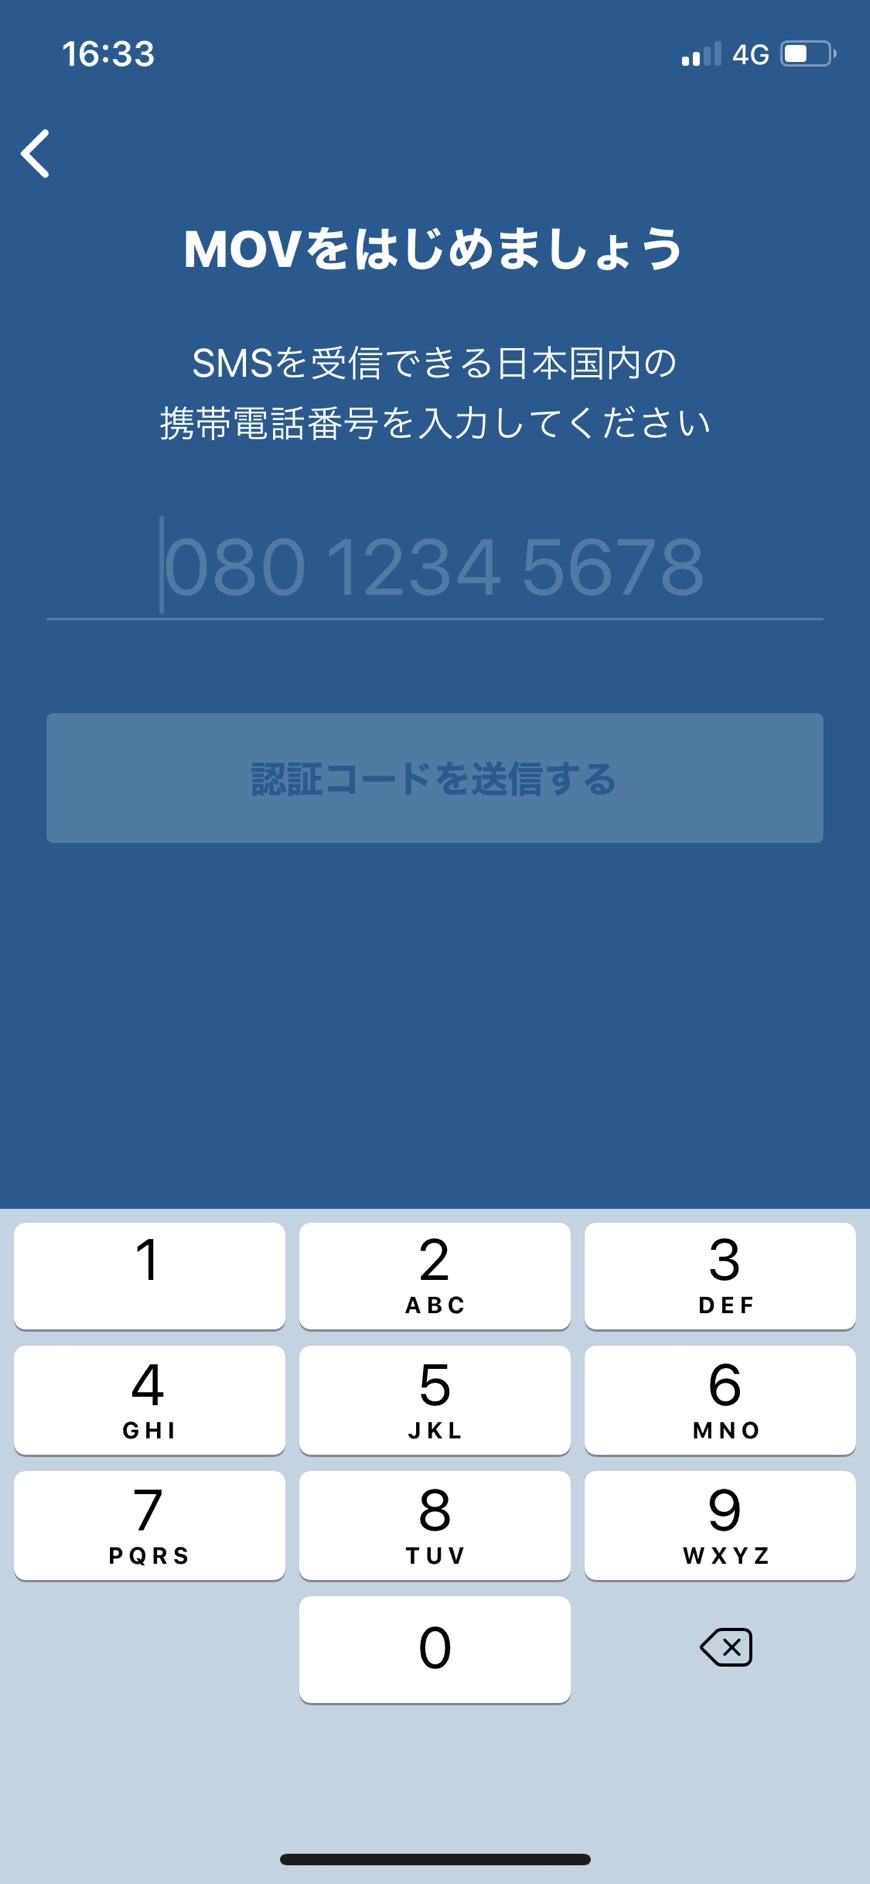 MOVタクシーアプリに携帯電話番号を入力